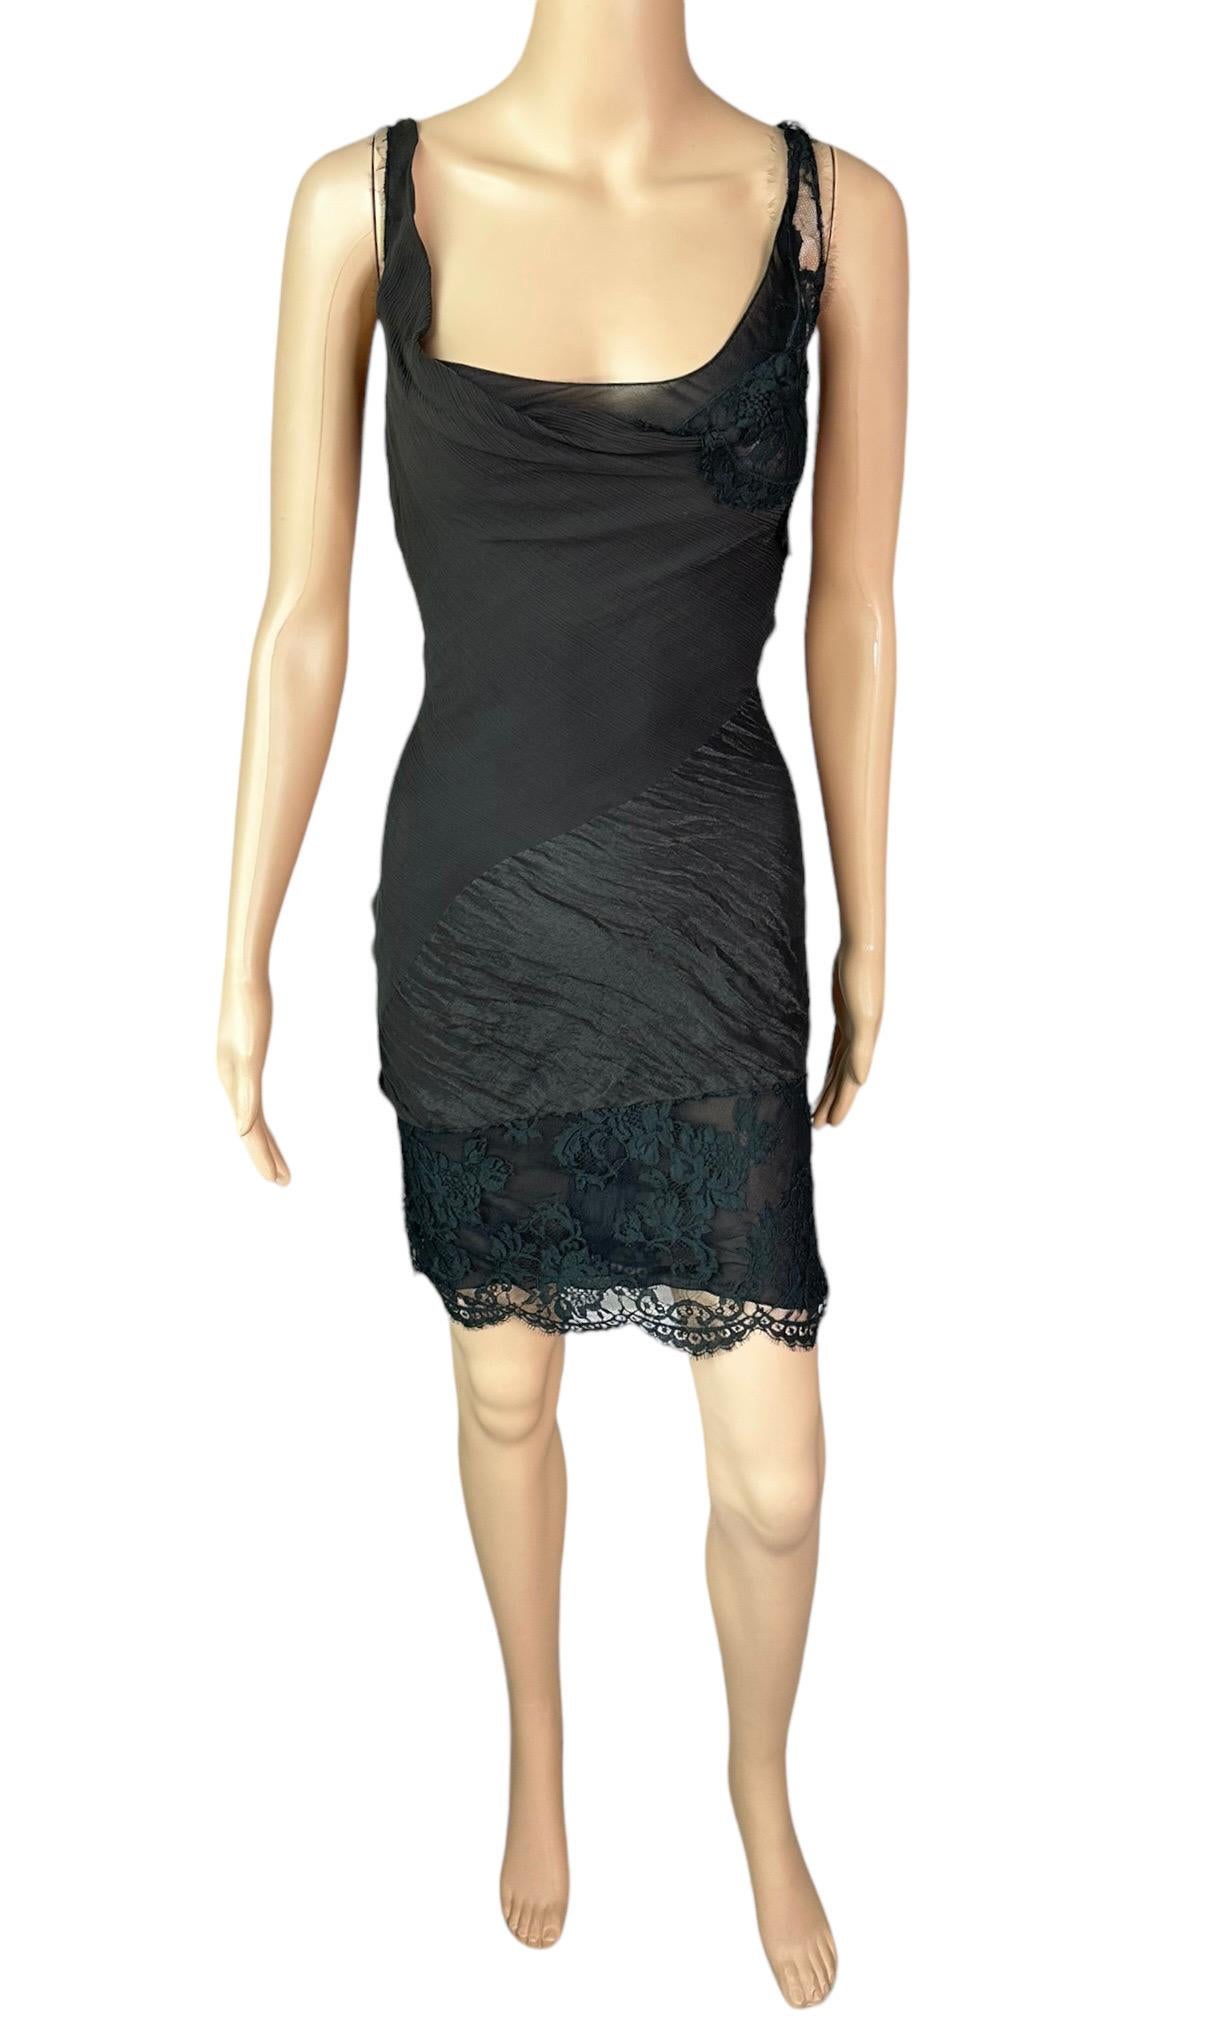 John Galliano F/W 2006 Semi-Sheer Lace Knit Slip Black 2 Piece Mini Dress 9